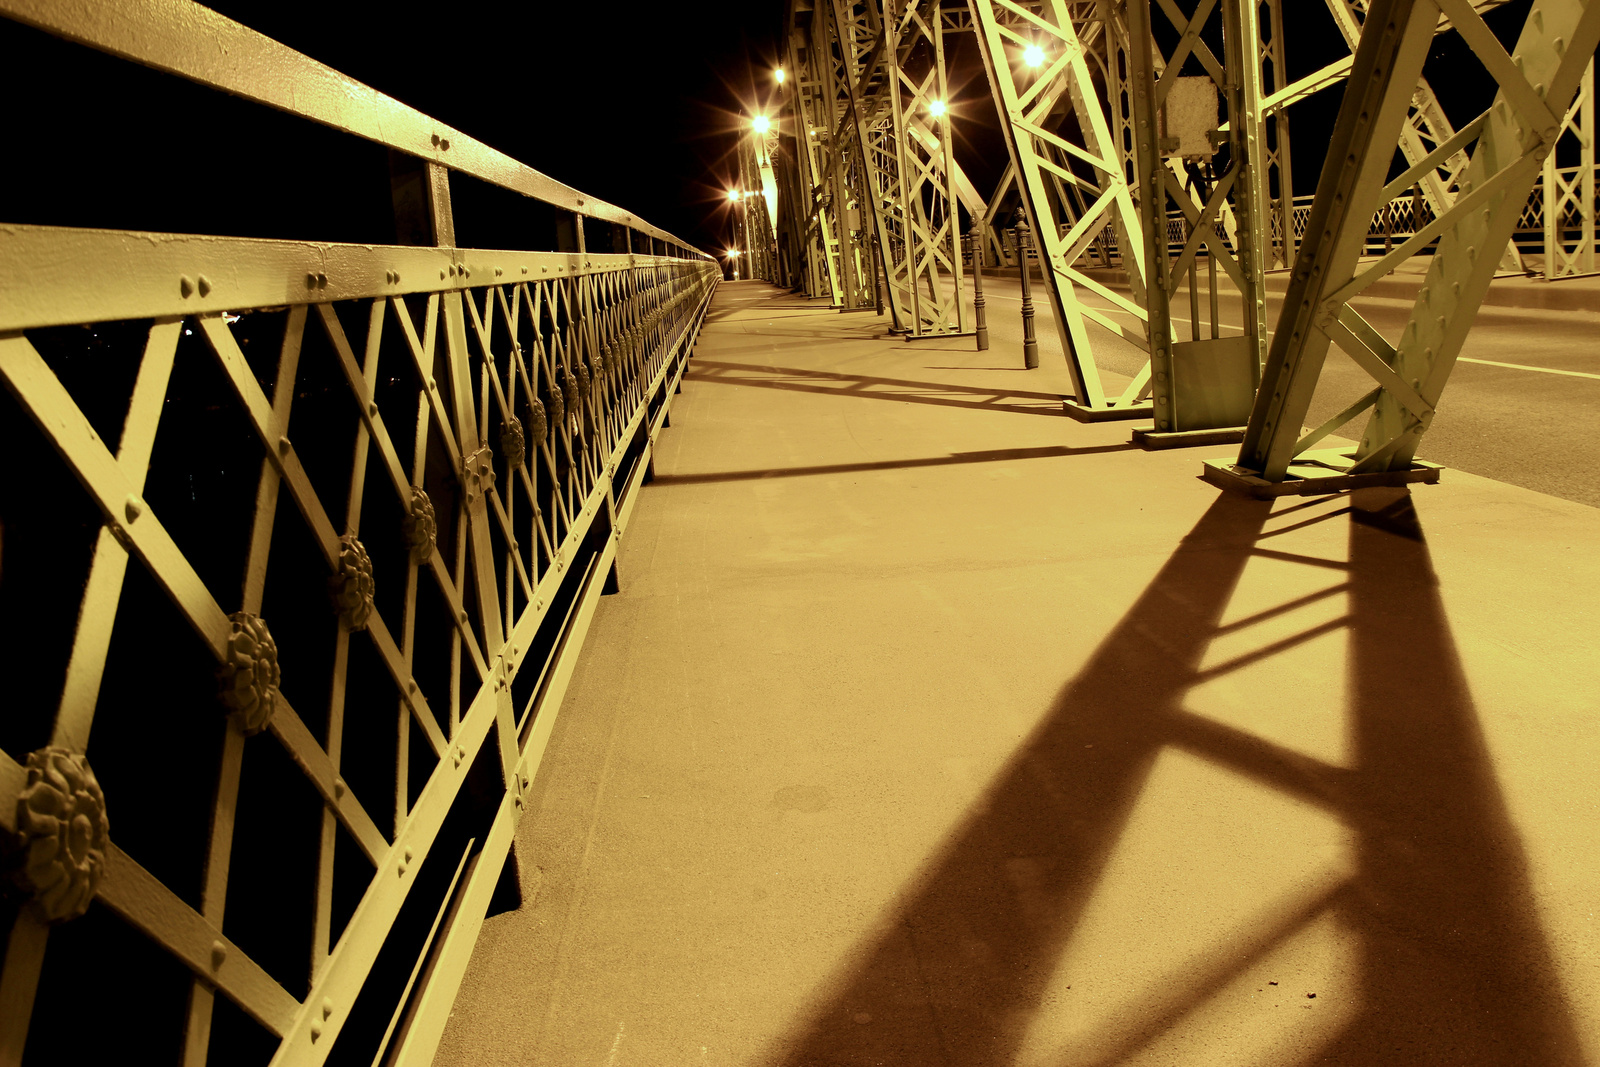 Mária Valéria-híd, Esztergom, éjszaka